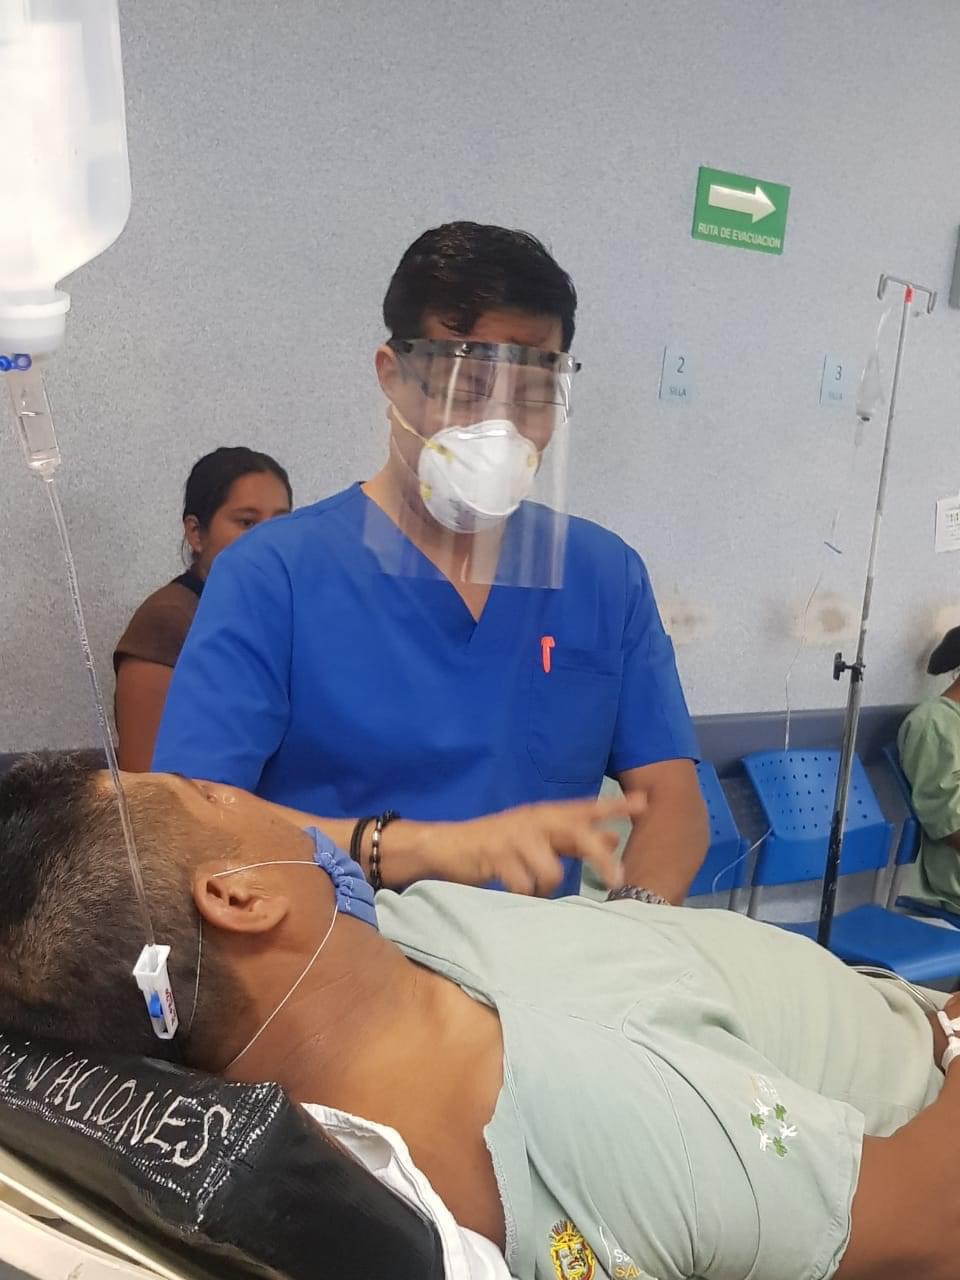 Dona emprendedor las primeras 15 caretas a personal médico para enfrentar Covid-19 en Guerrero